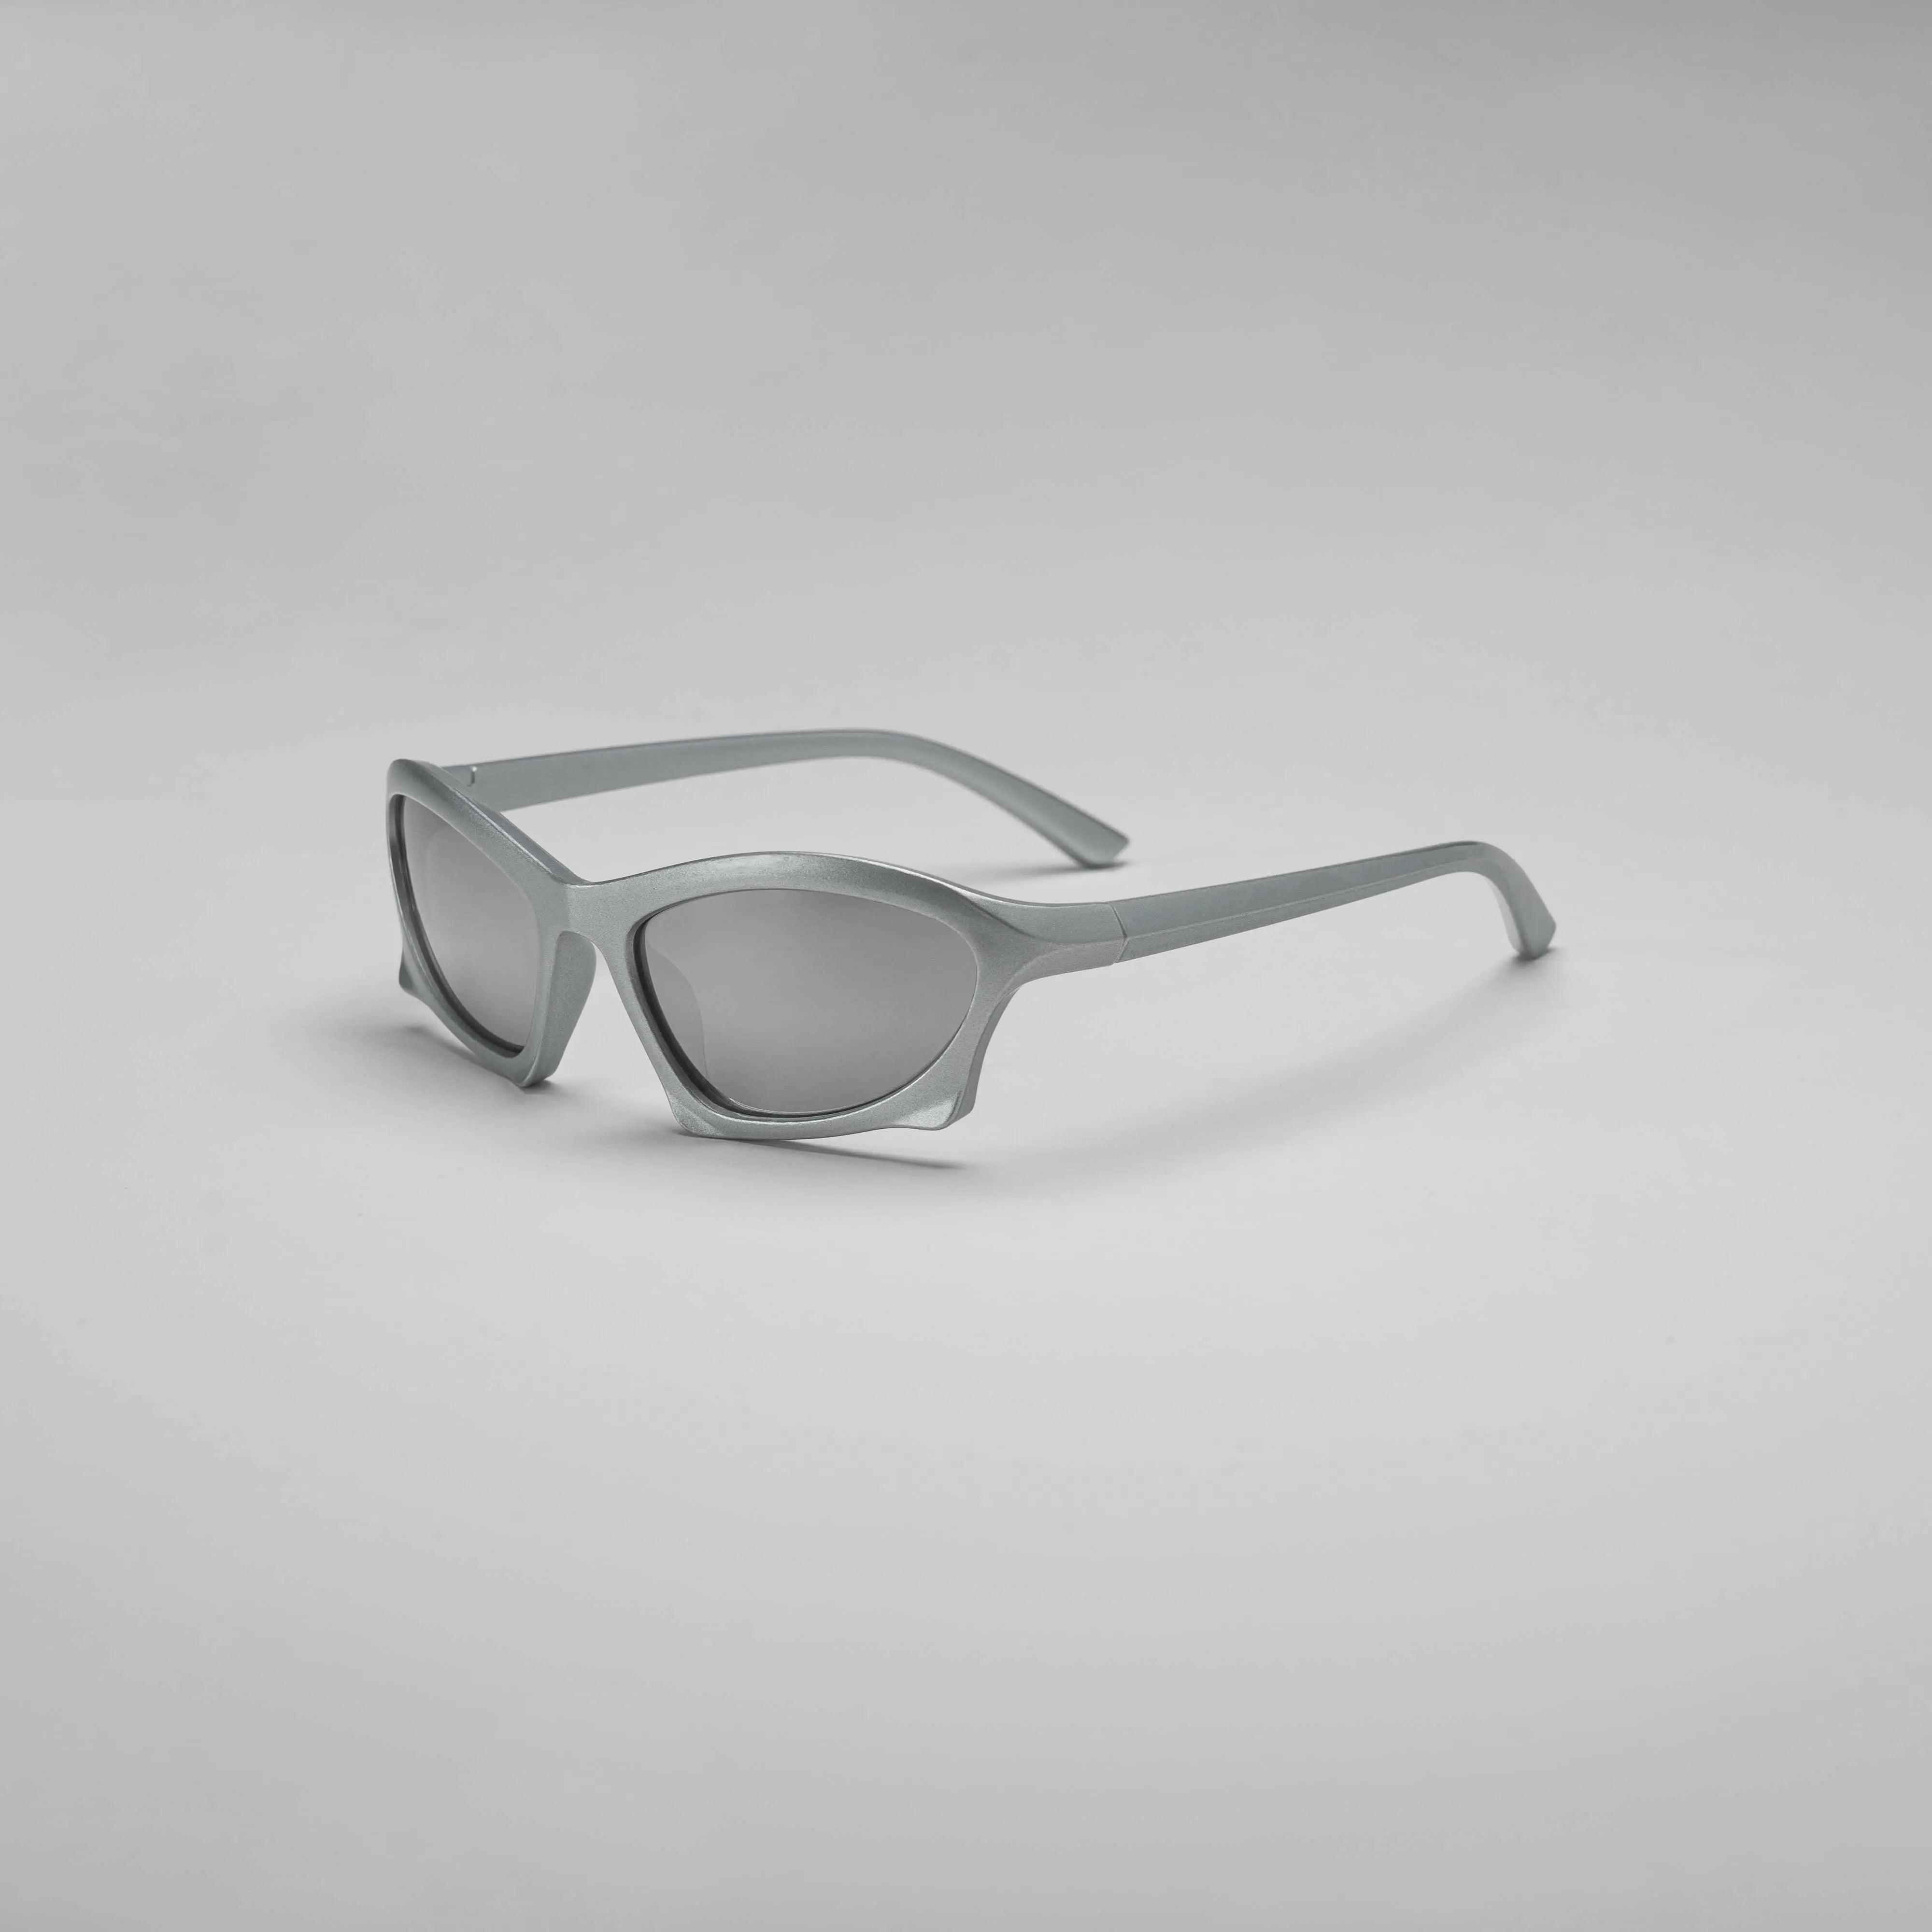 'Chrome' Futuristic Y2K Sunglasses in Silver and Chrome